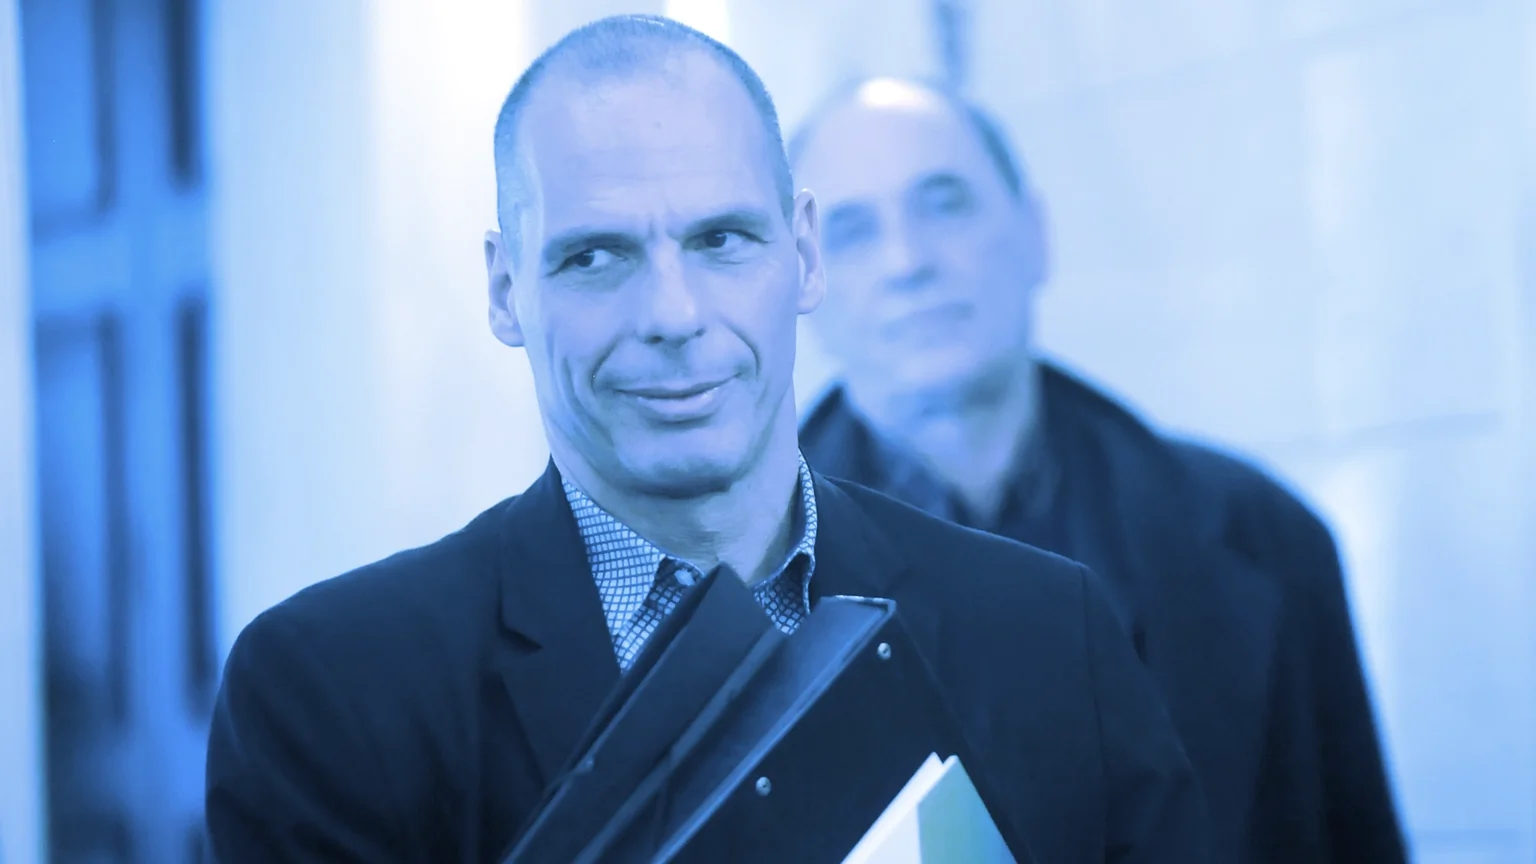 Yanis Varoufakis. Image: Shutterstock